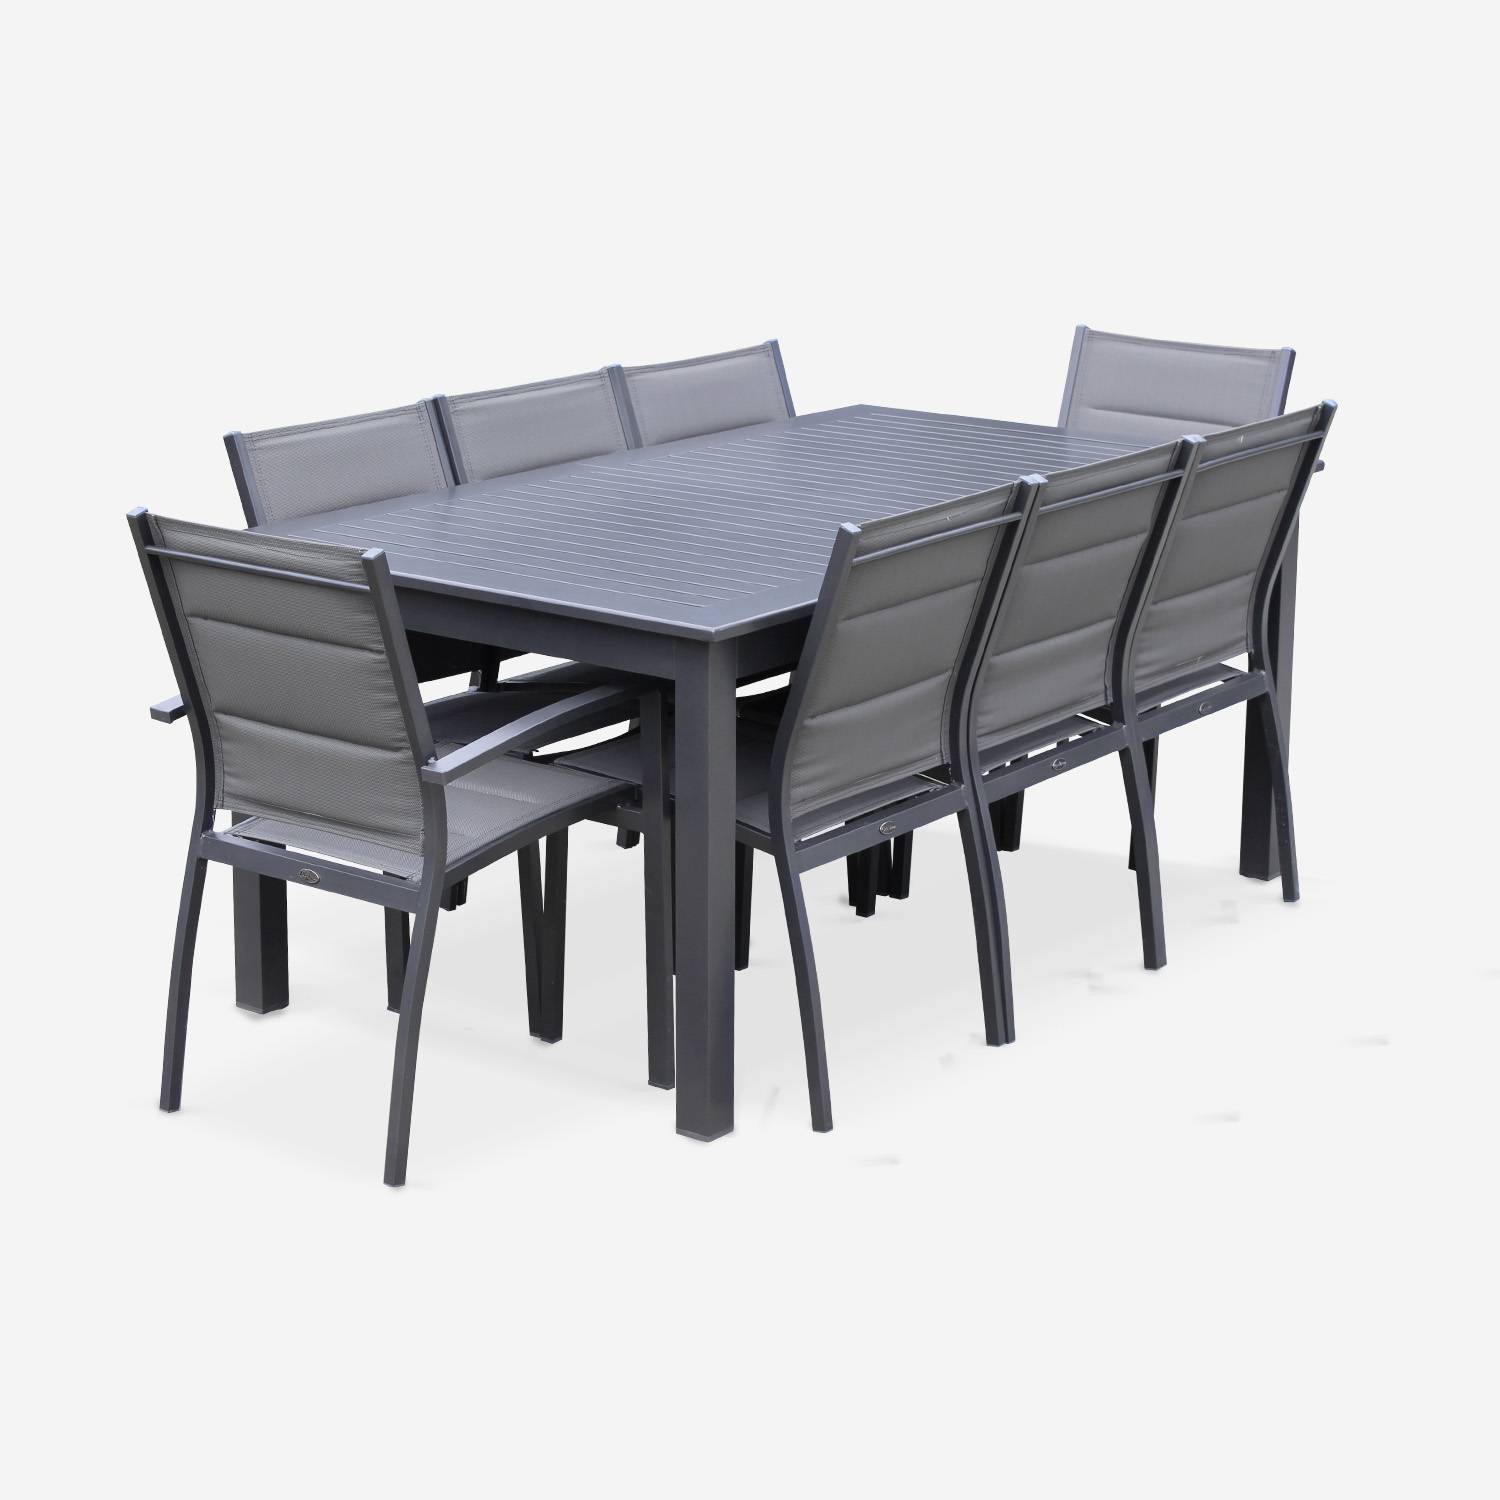 Set da giardino con tavolo allungabile - modello: Chicago, colore: Antracite - Tavolo in alluminio, dimensioni: 175/245cm con prolunga e 8 sedute in textilene,sweeek,Photo3